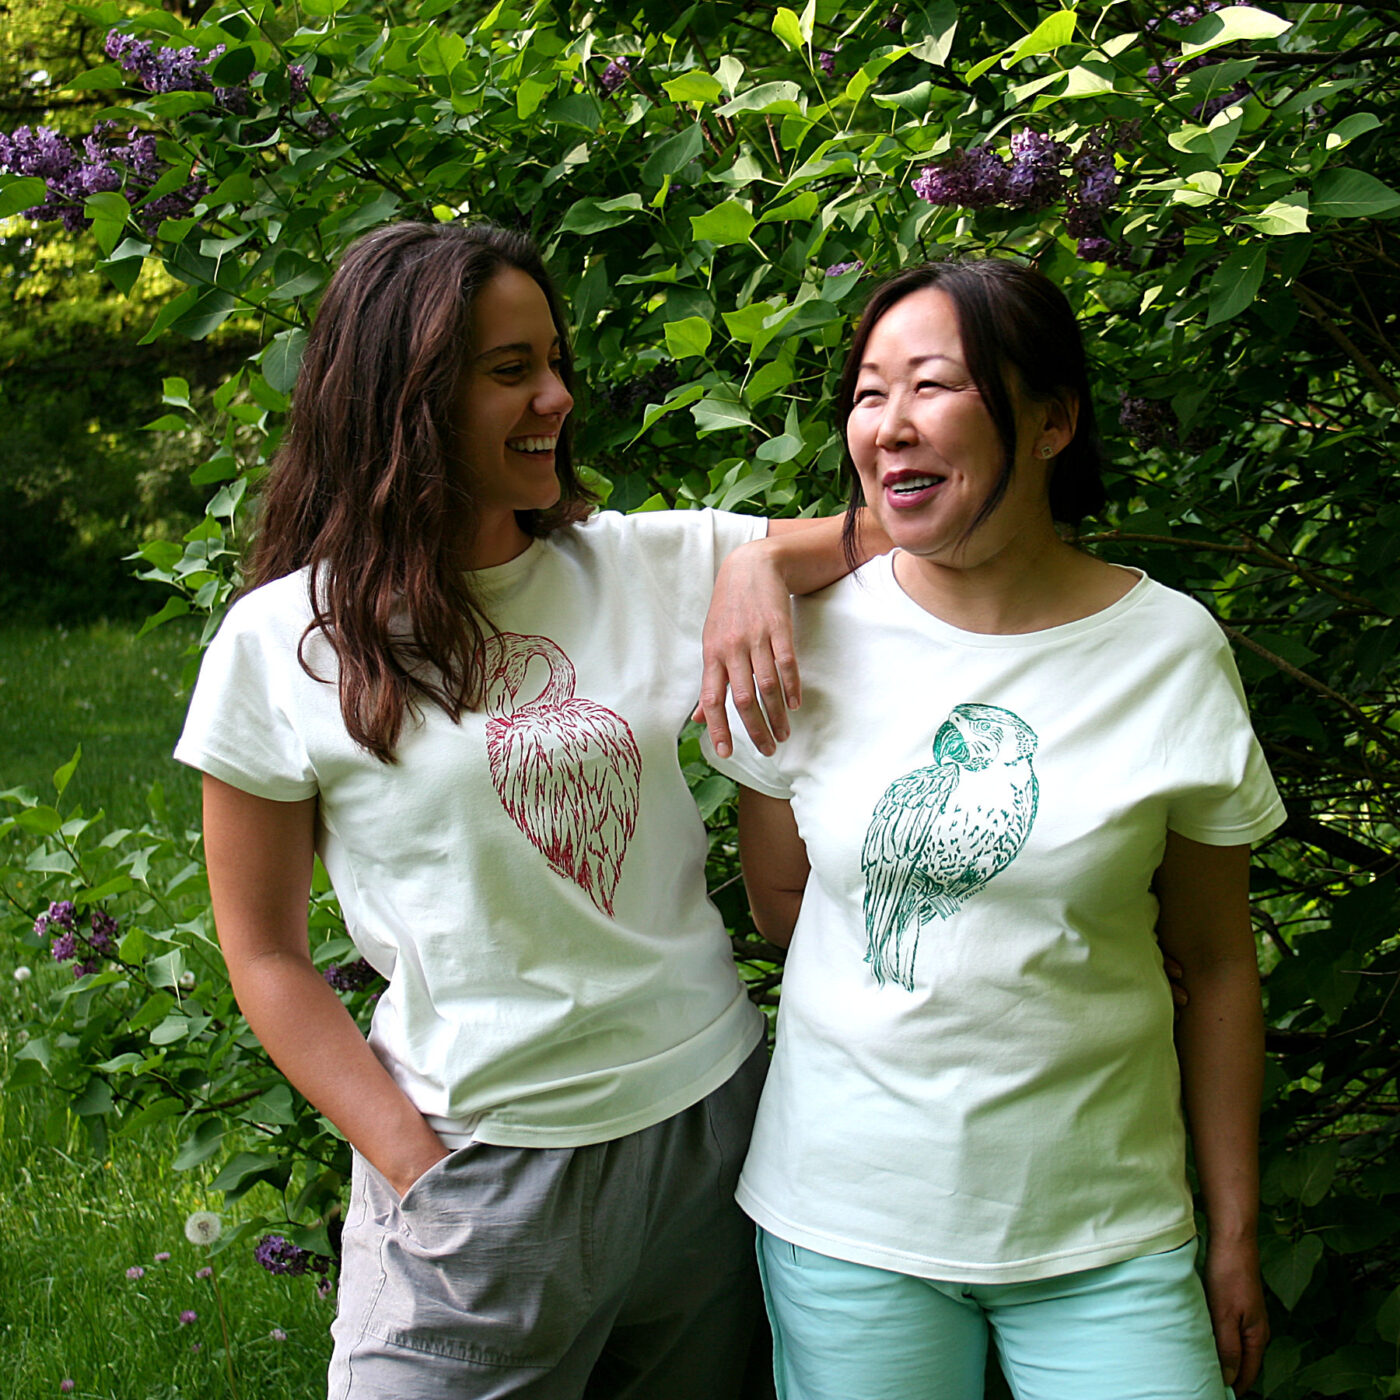 Zwei Frauen stehen vor grünen Pflanzen, sie tragen weißes Shirt mit Siebdruckmotiven Flamingo und Papagei